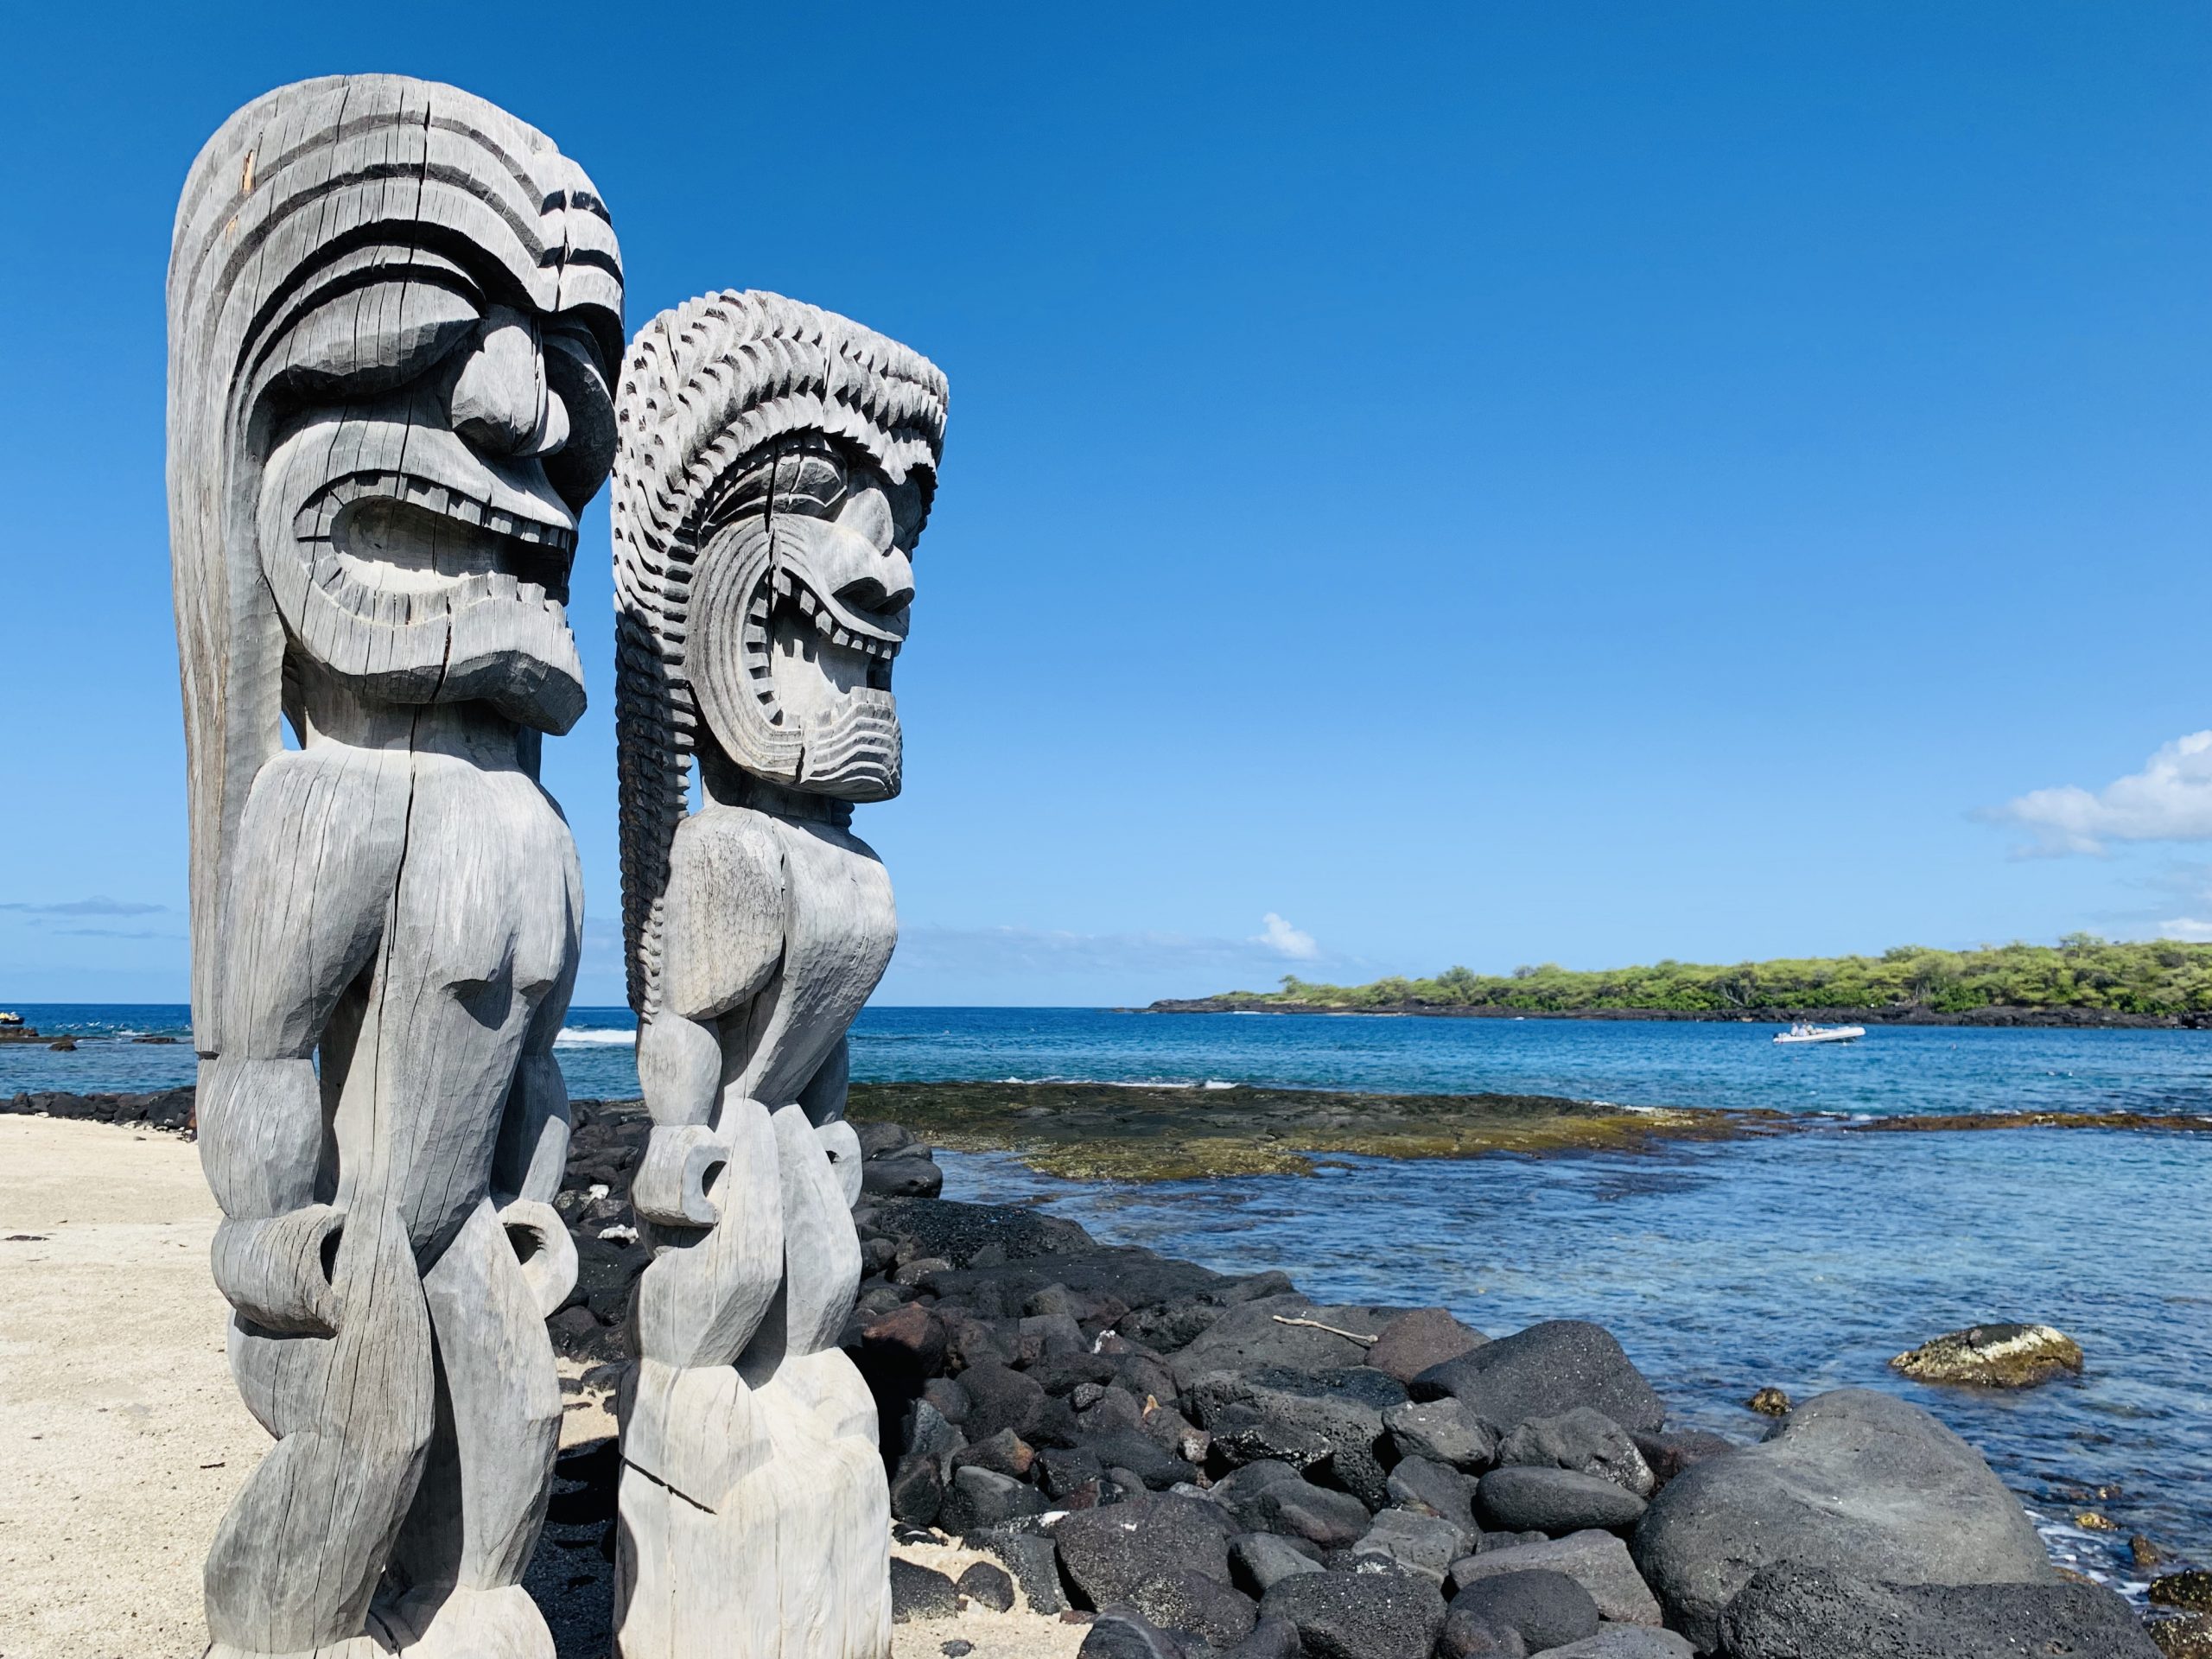 Tiki statues at Pu’uhonua o Hōnaunau National Historical Park